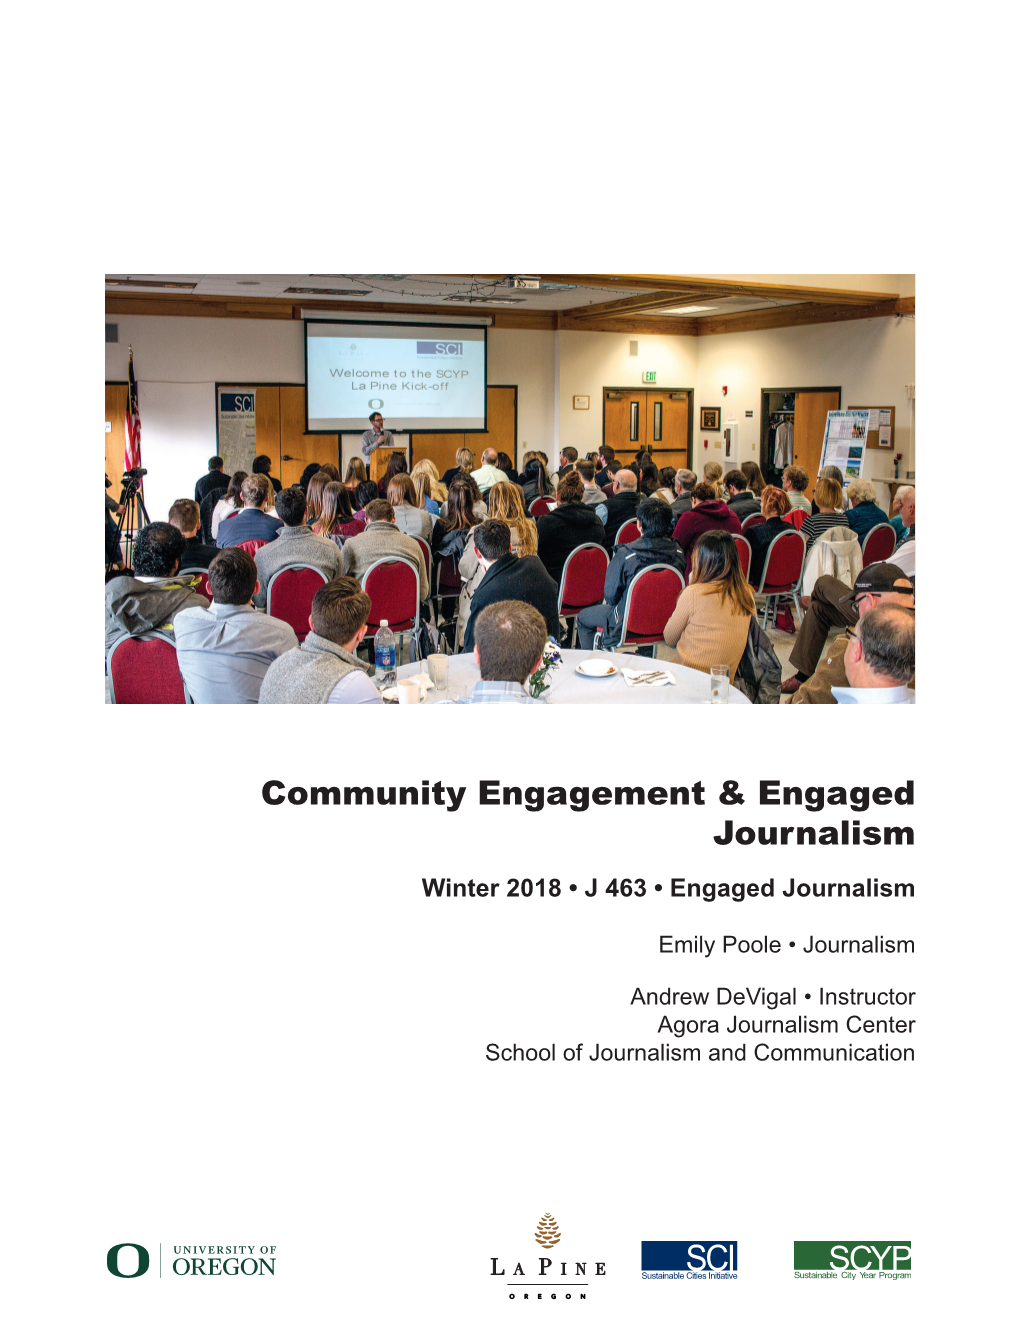 Community Engagement & Engaged Journalism